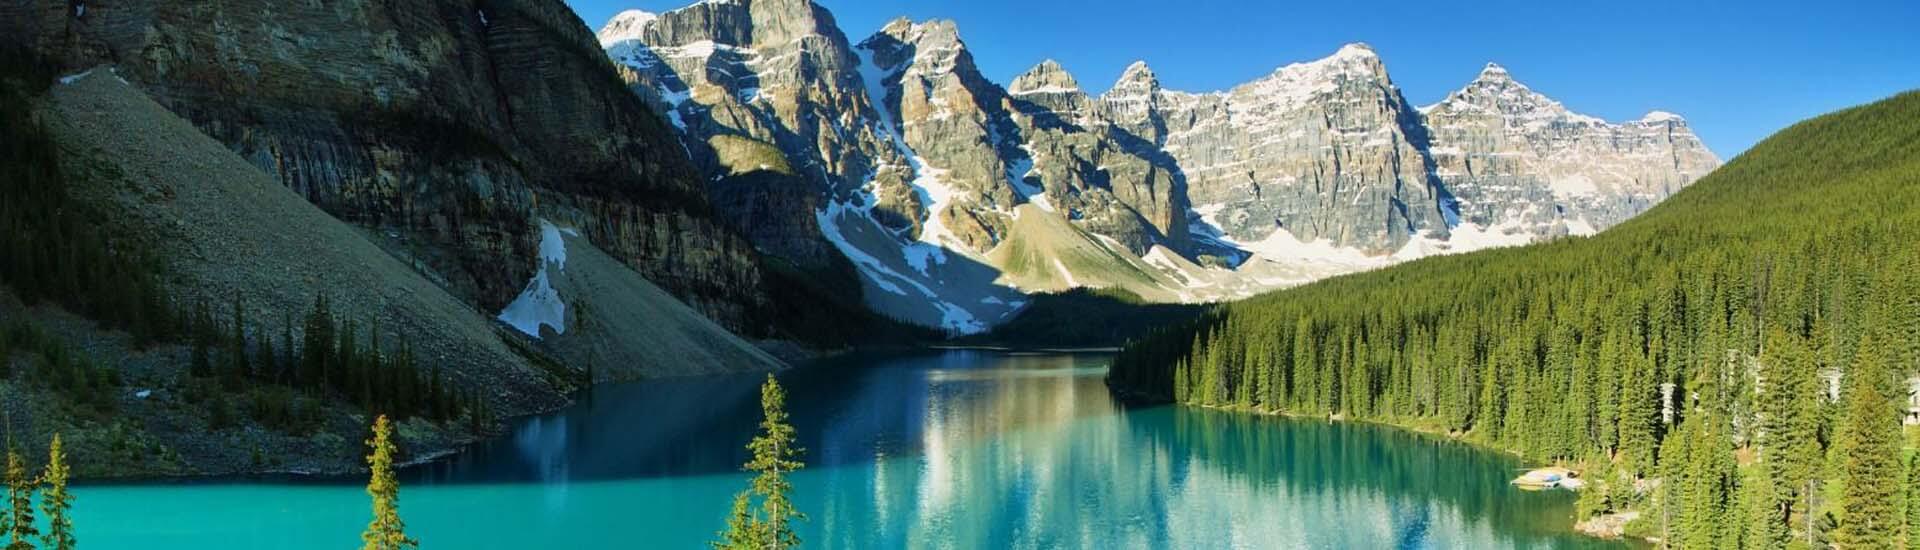 Панорамен изглед към езеро в Канада